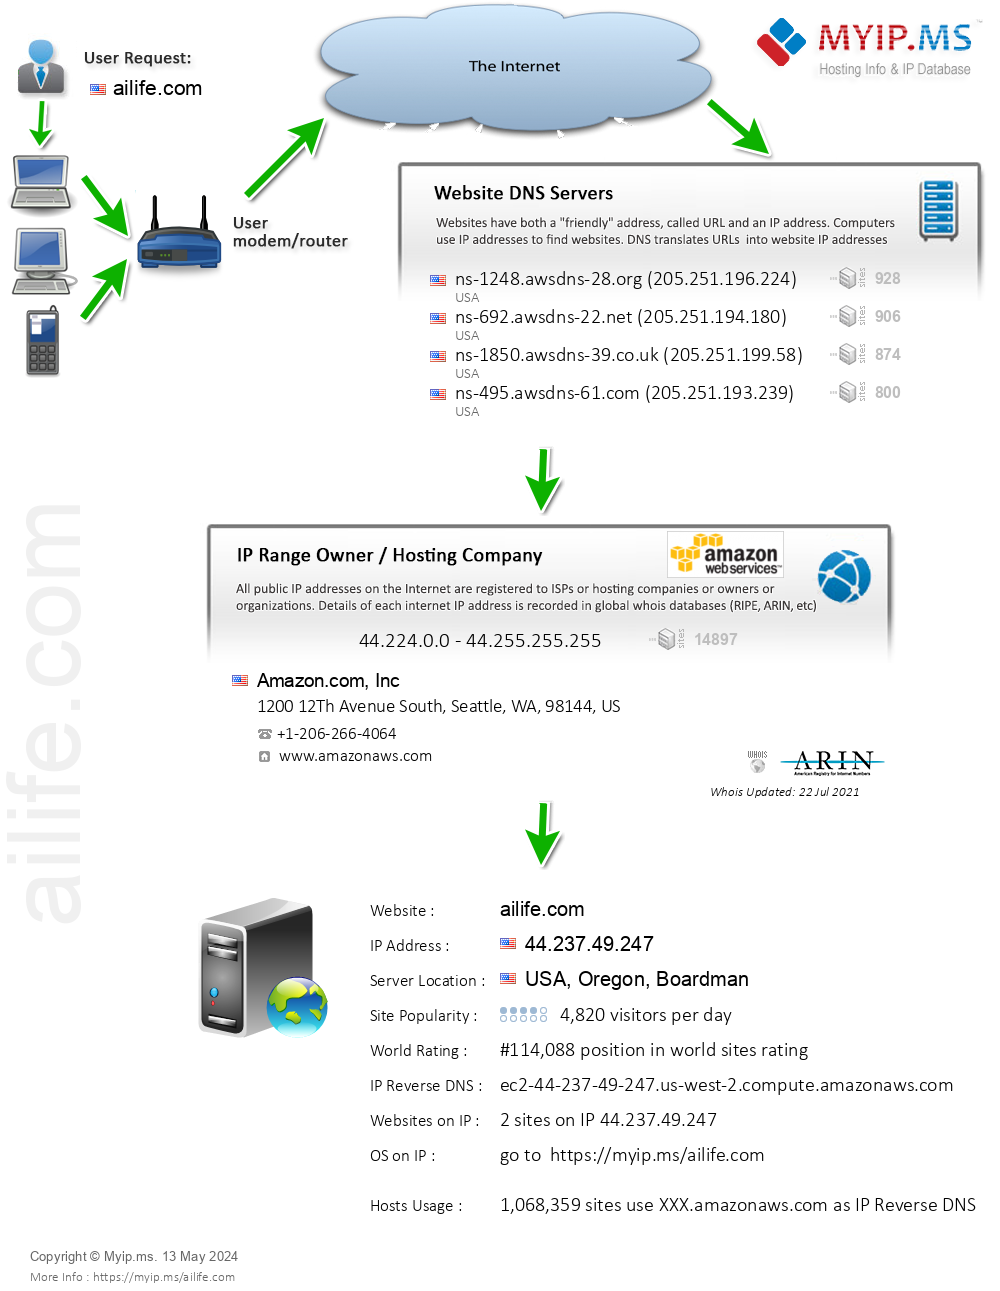 Ailife.com - Website Hosting Visual IP Diagram